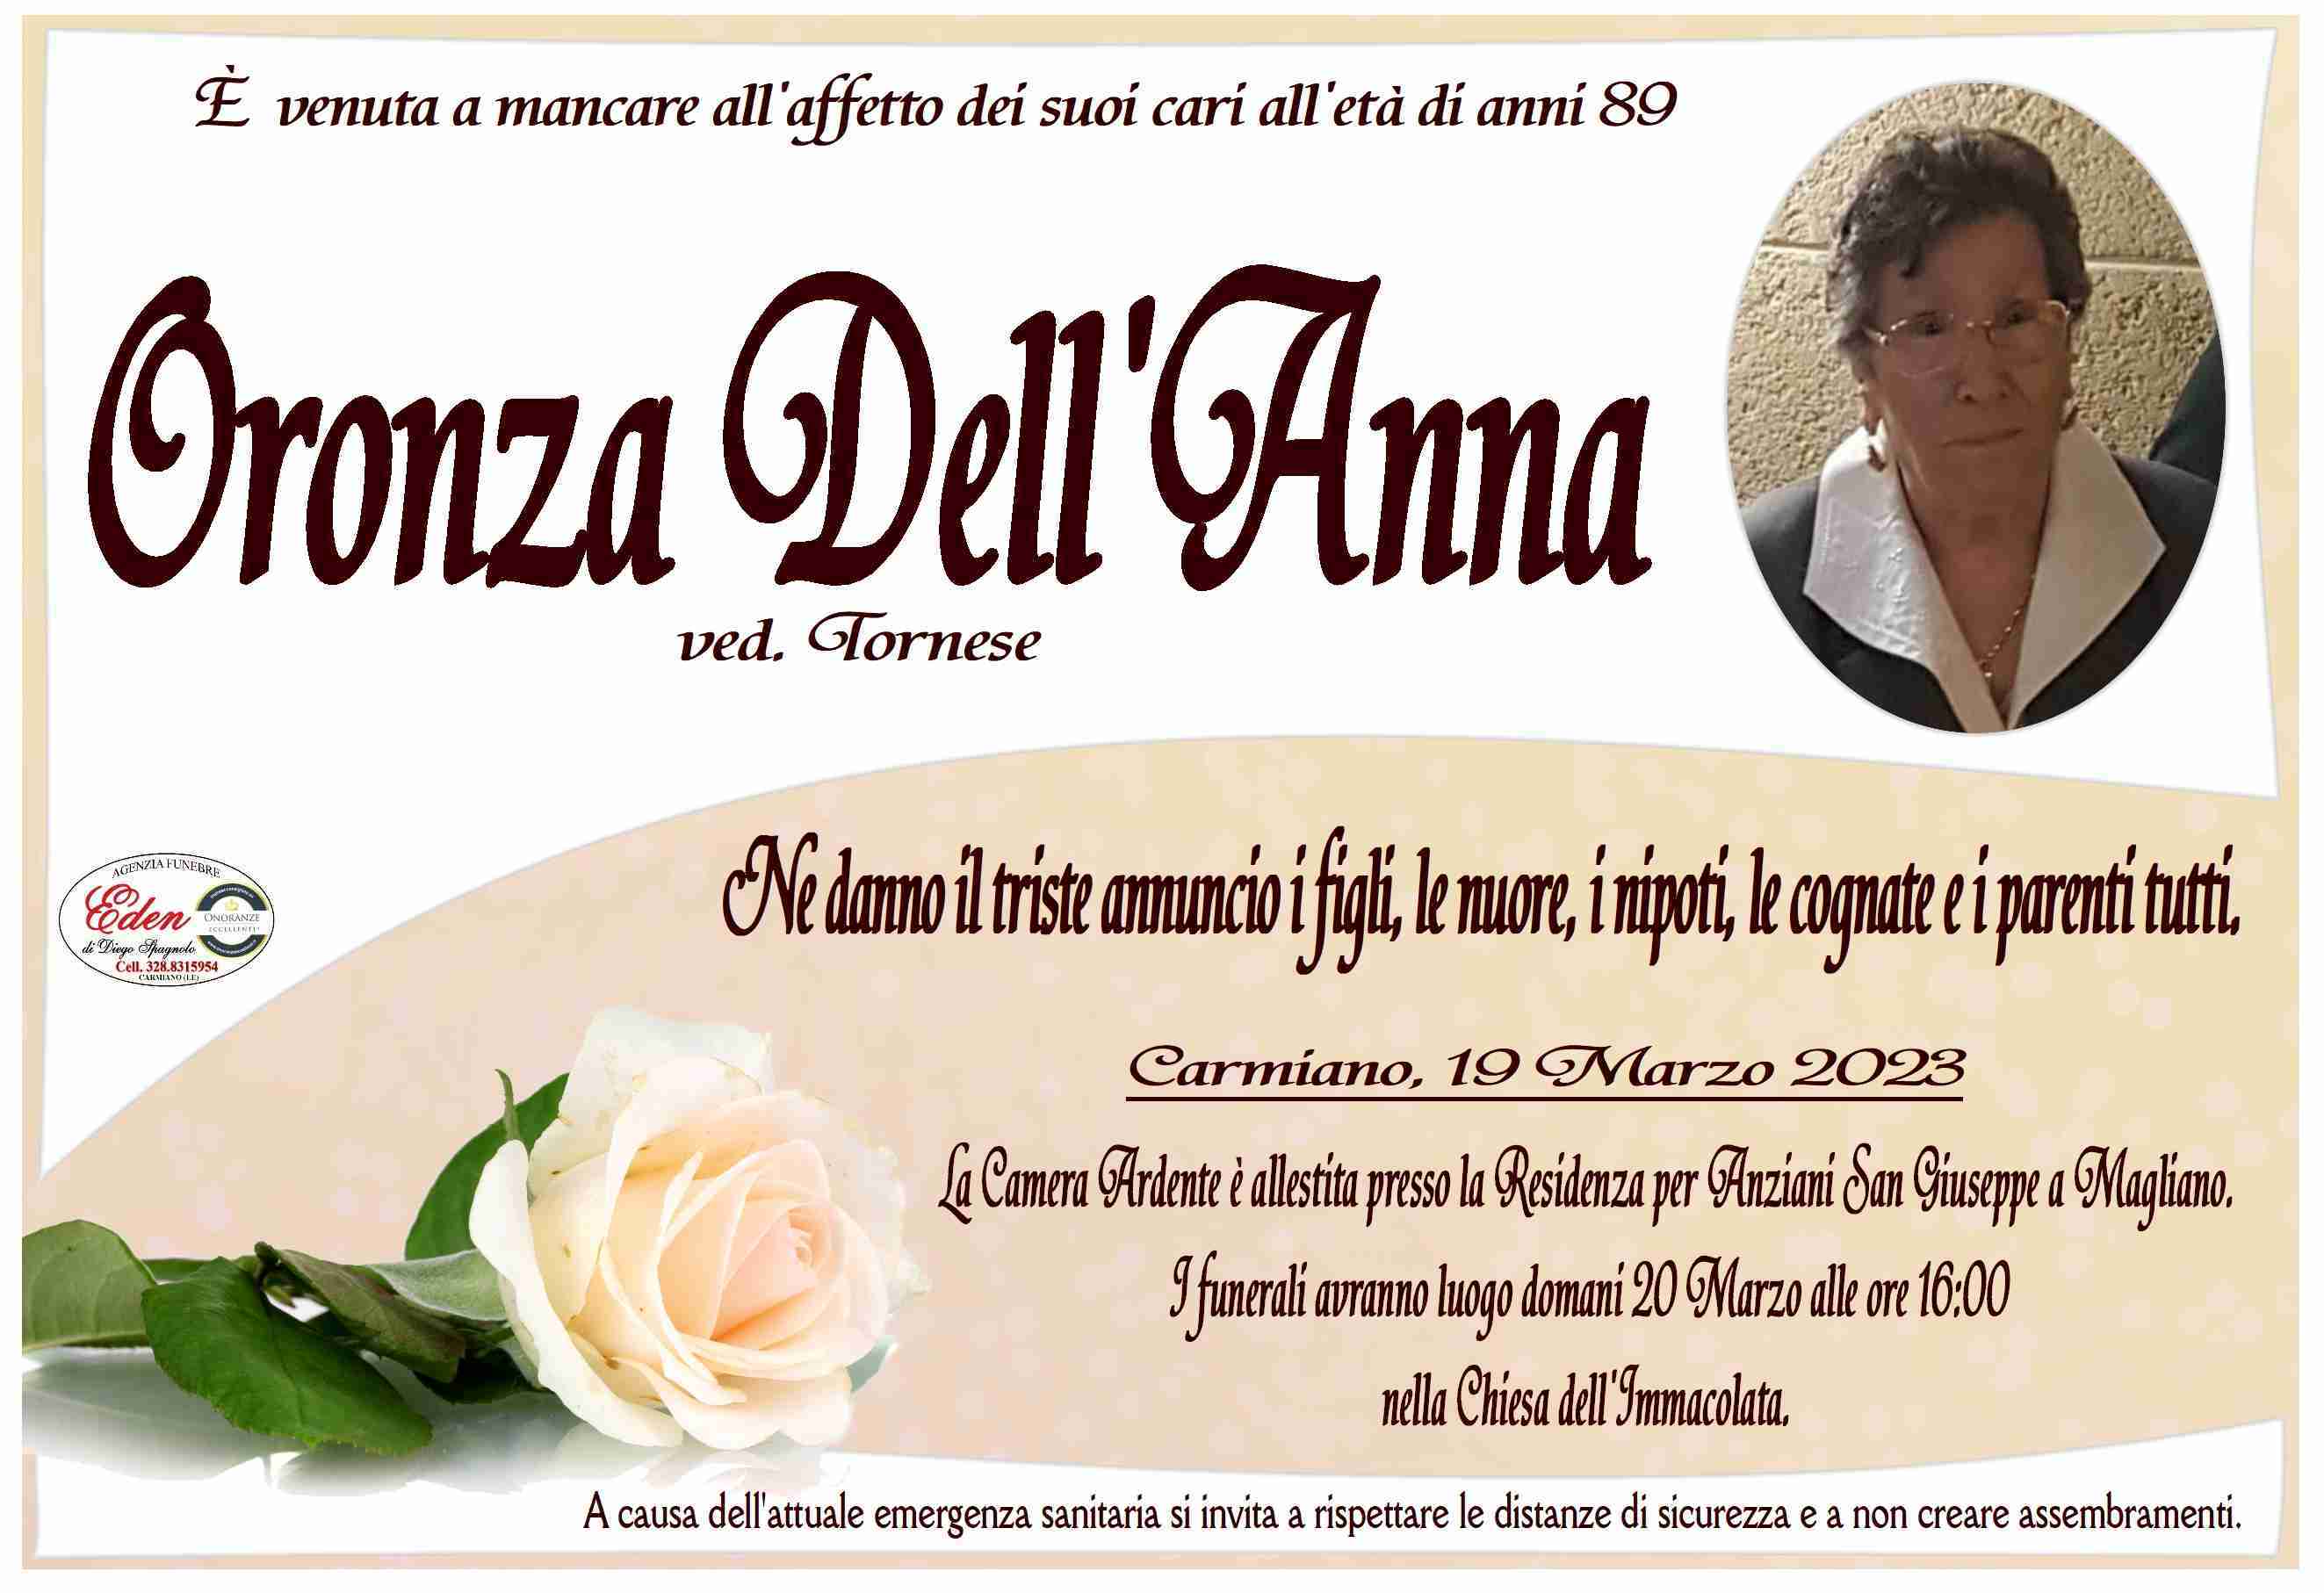 Oronza Dell'Anna